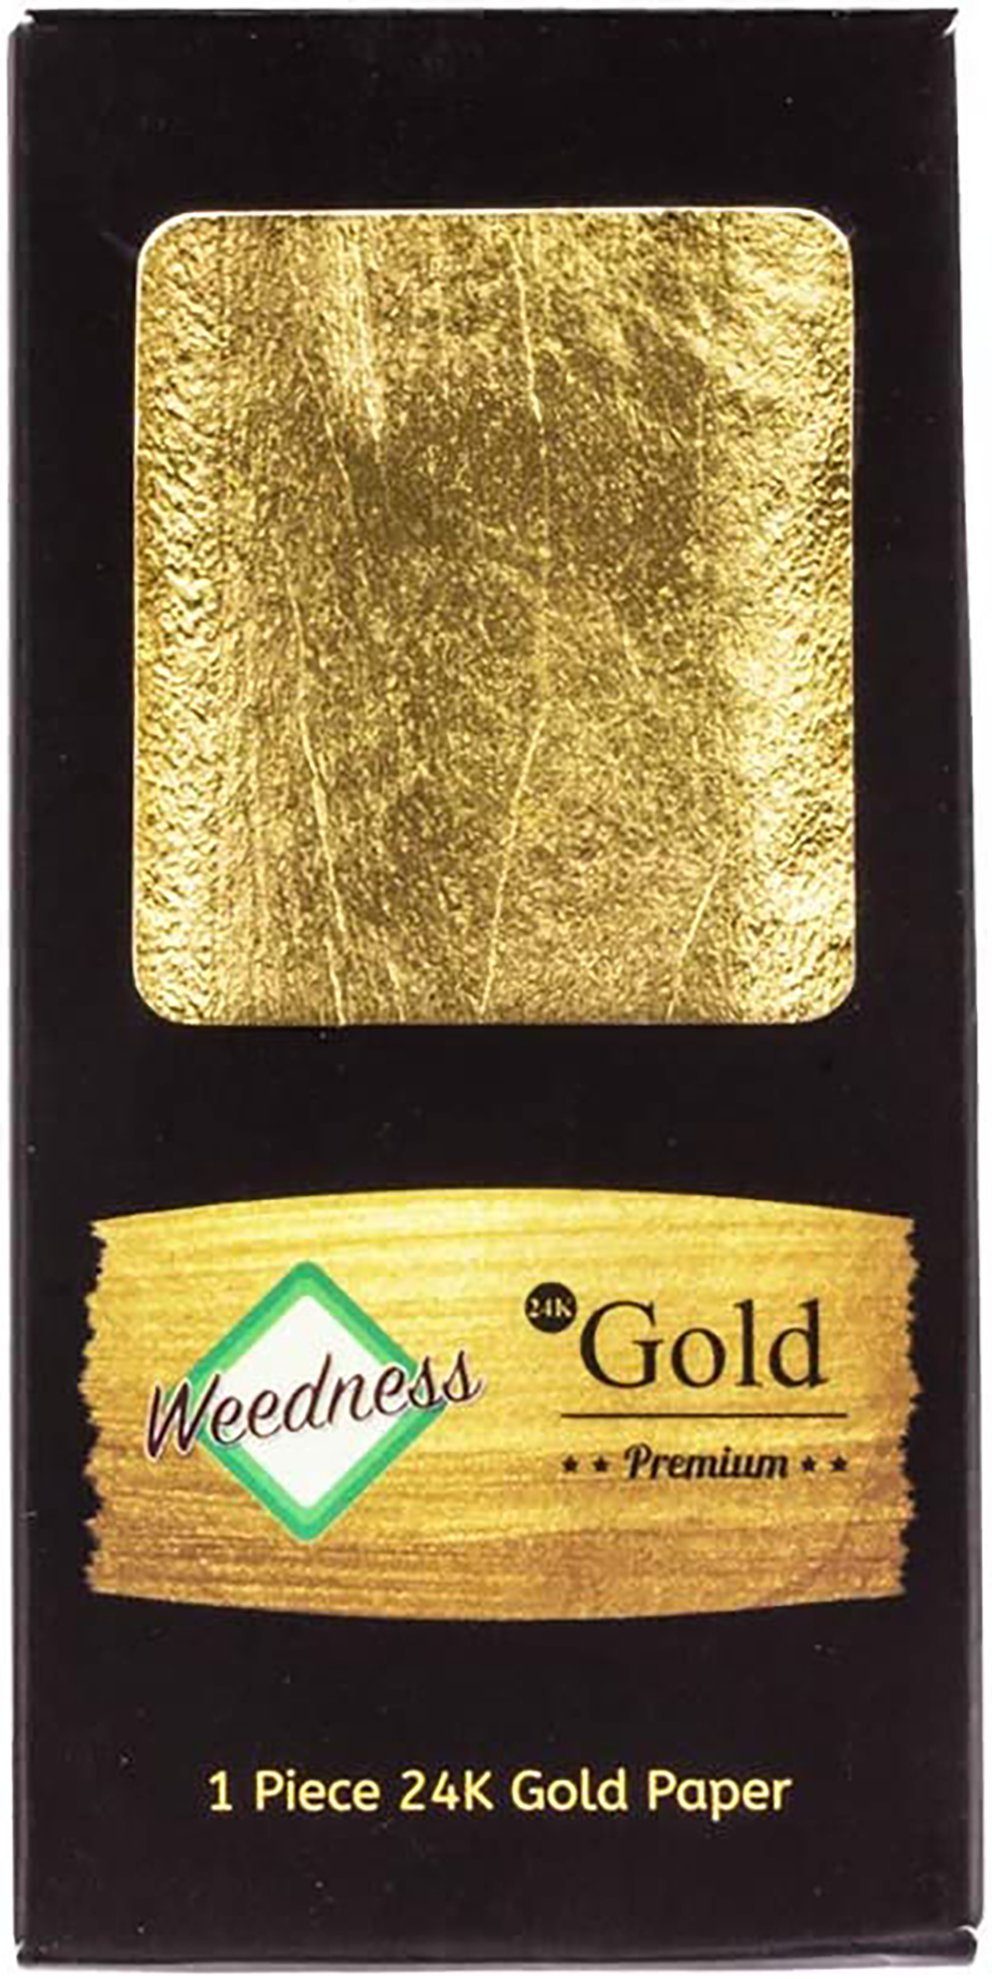 Weedness Feinpapier Gold 1 24 Gold aus Paper echtem Blättchen Long King Paper Karat Size